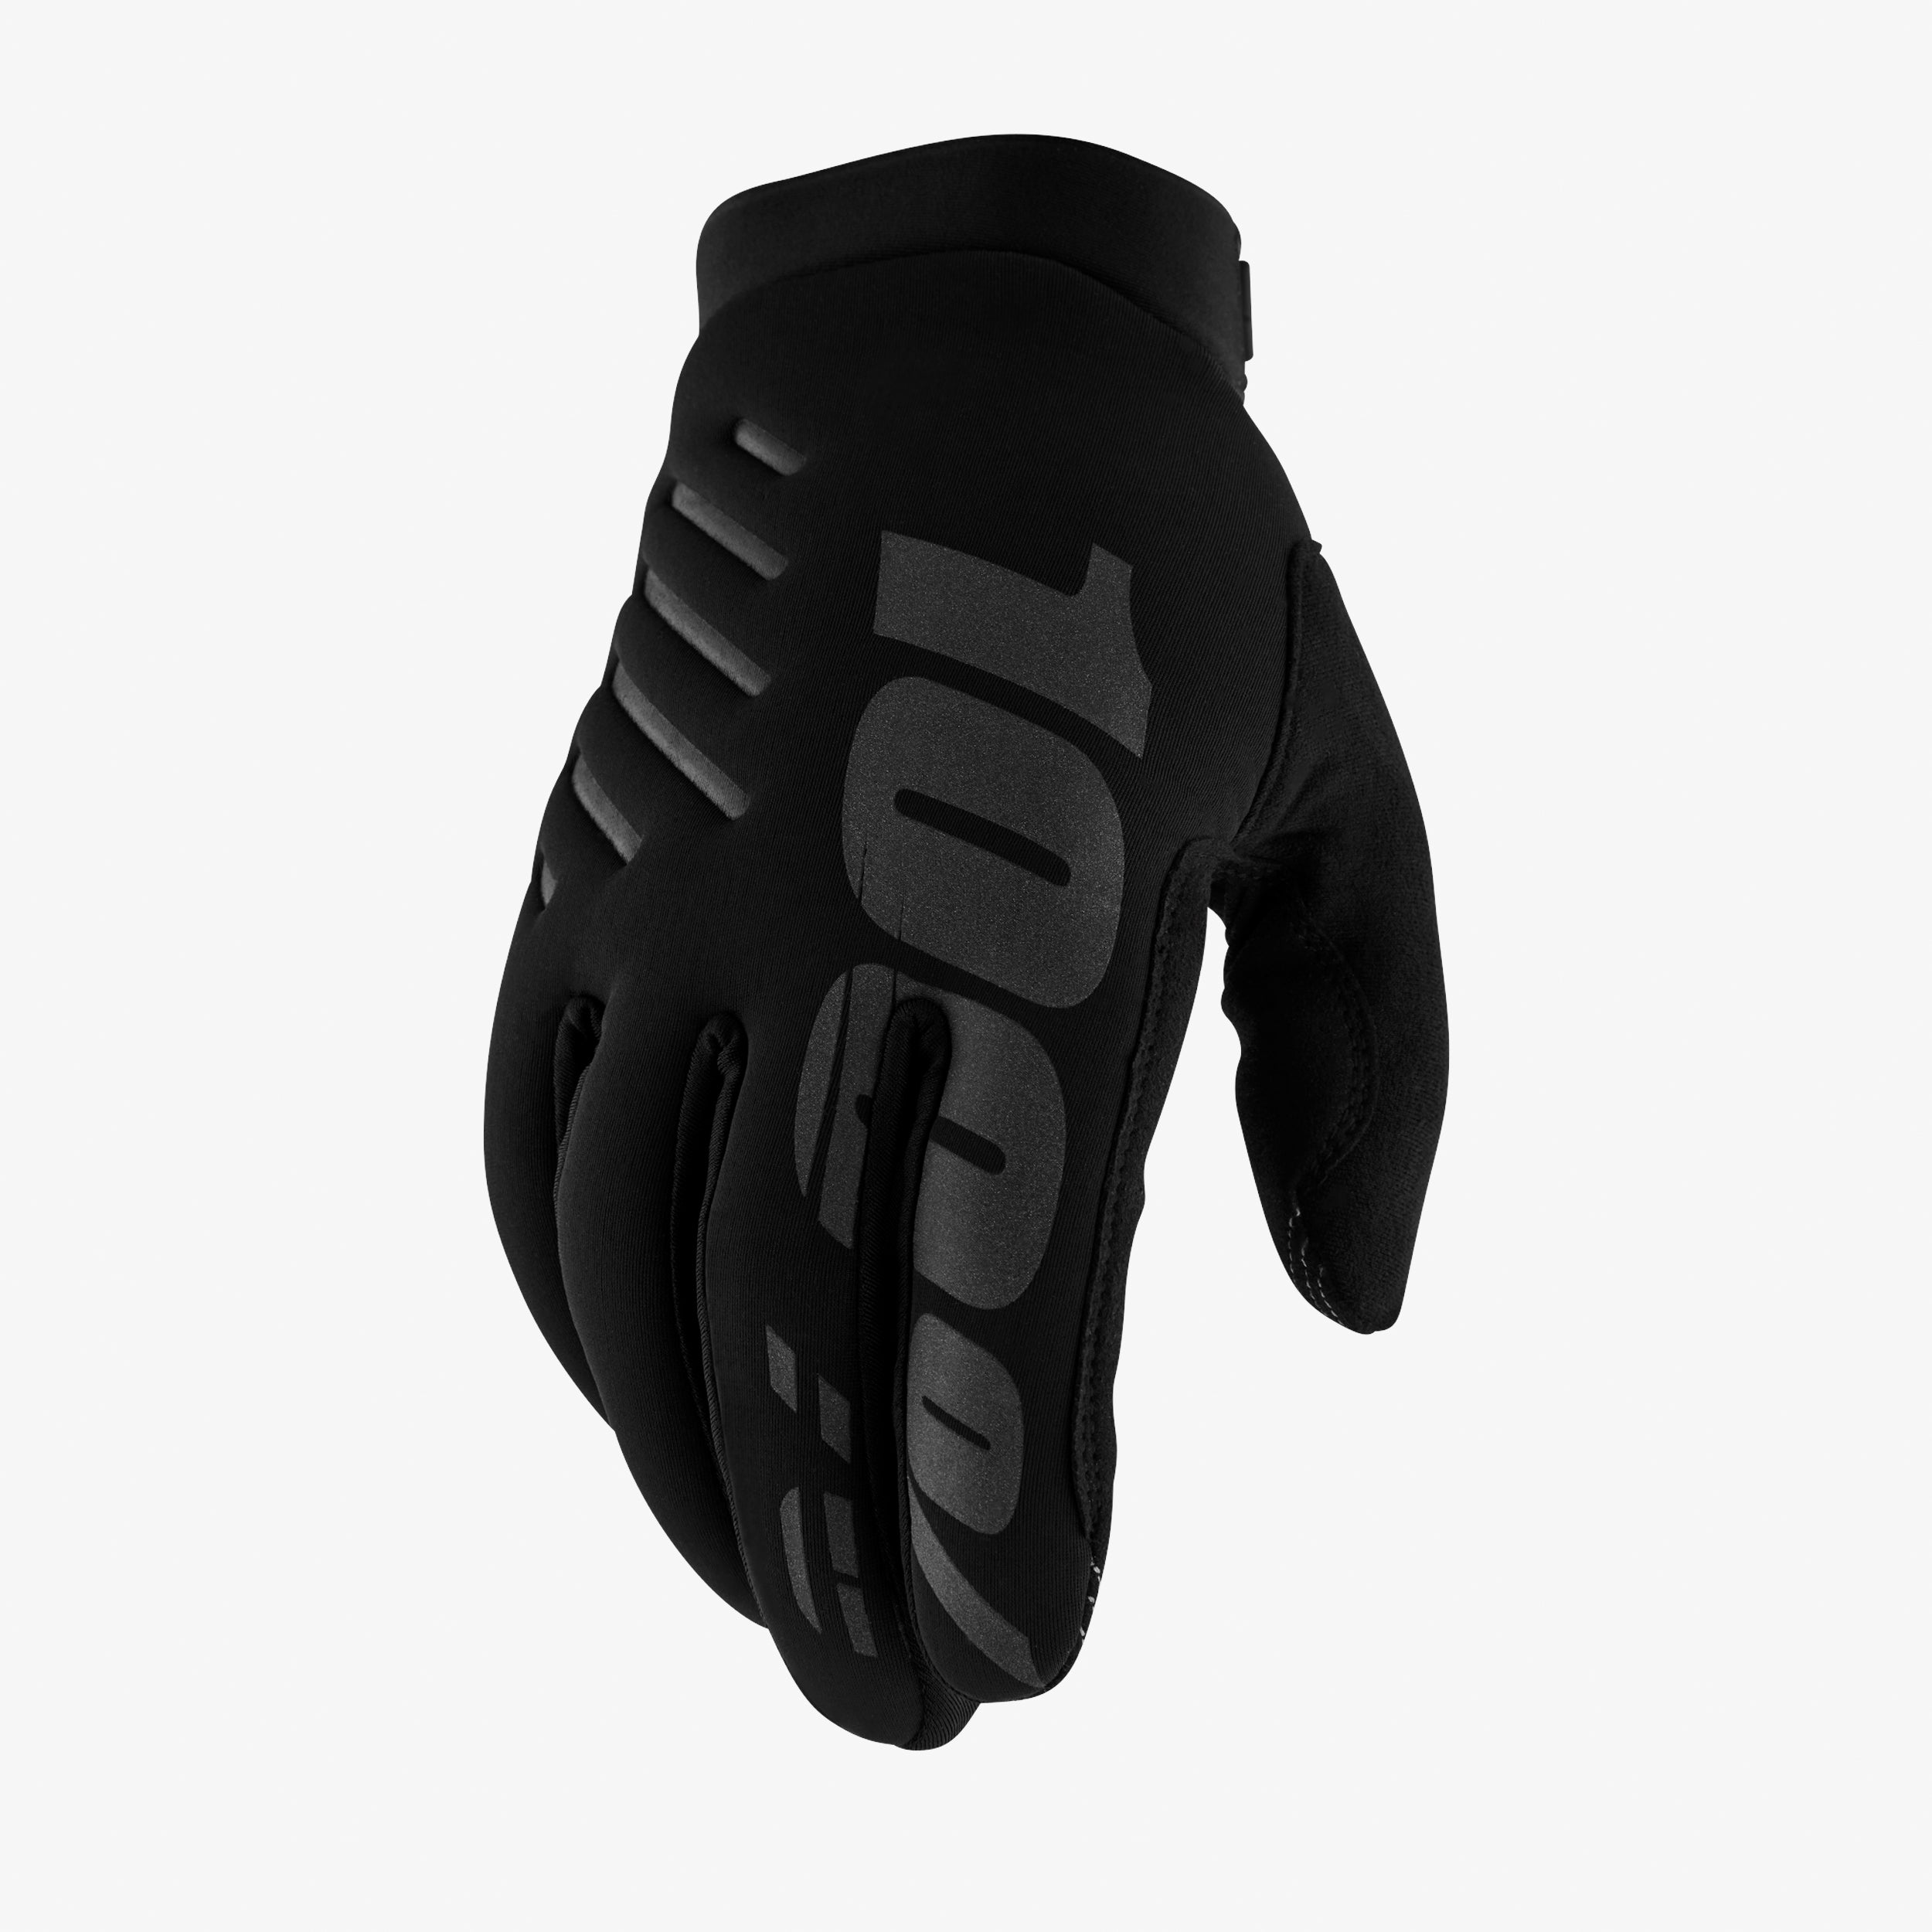 BRISKER Gloves Black